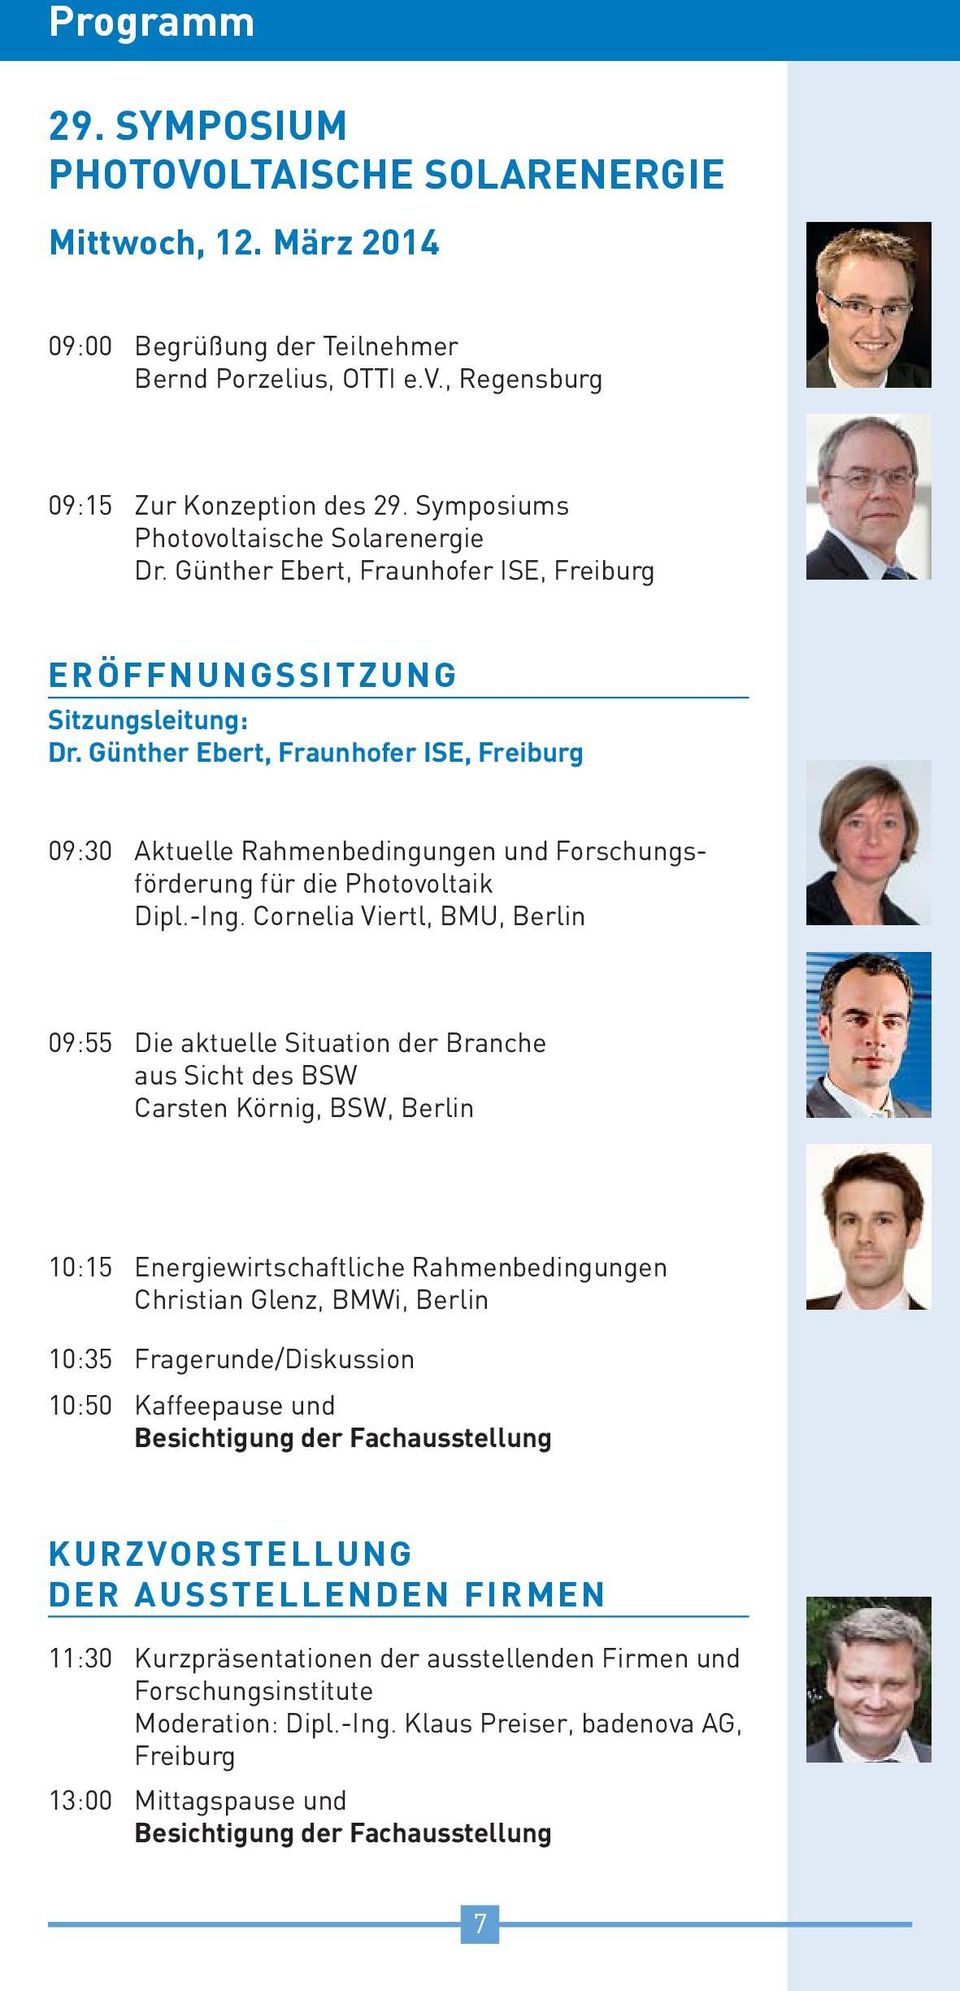 Günther Ebert, Fraunhofer ISE, Freiburg 09:30 Aktuelle Rahmenbedingungen und Forschungsförderung für die Photovoltaik Dipl.-Ing.